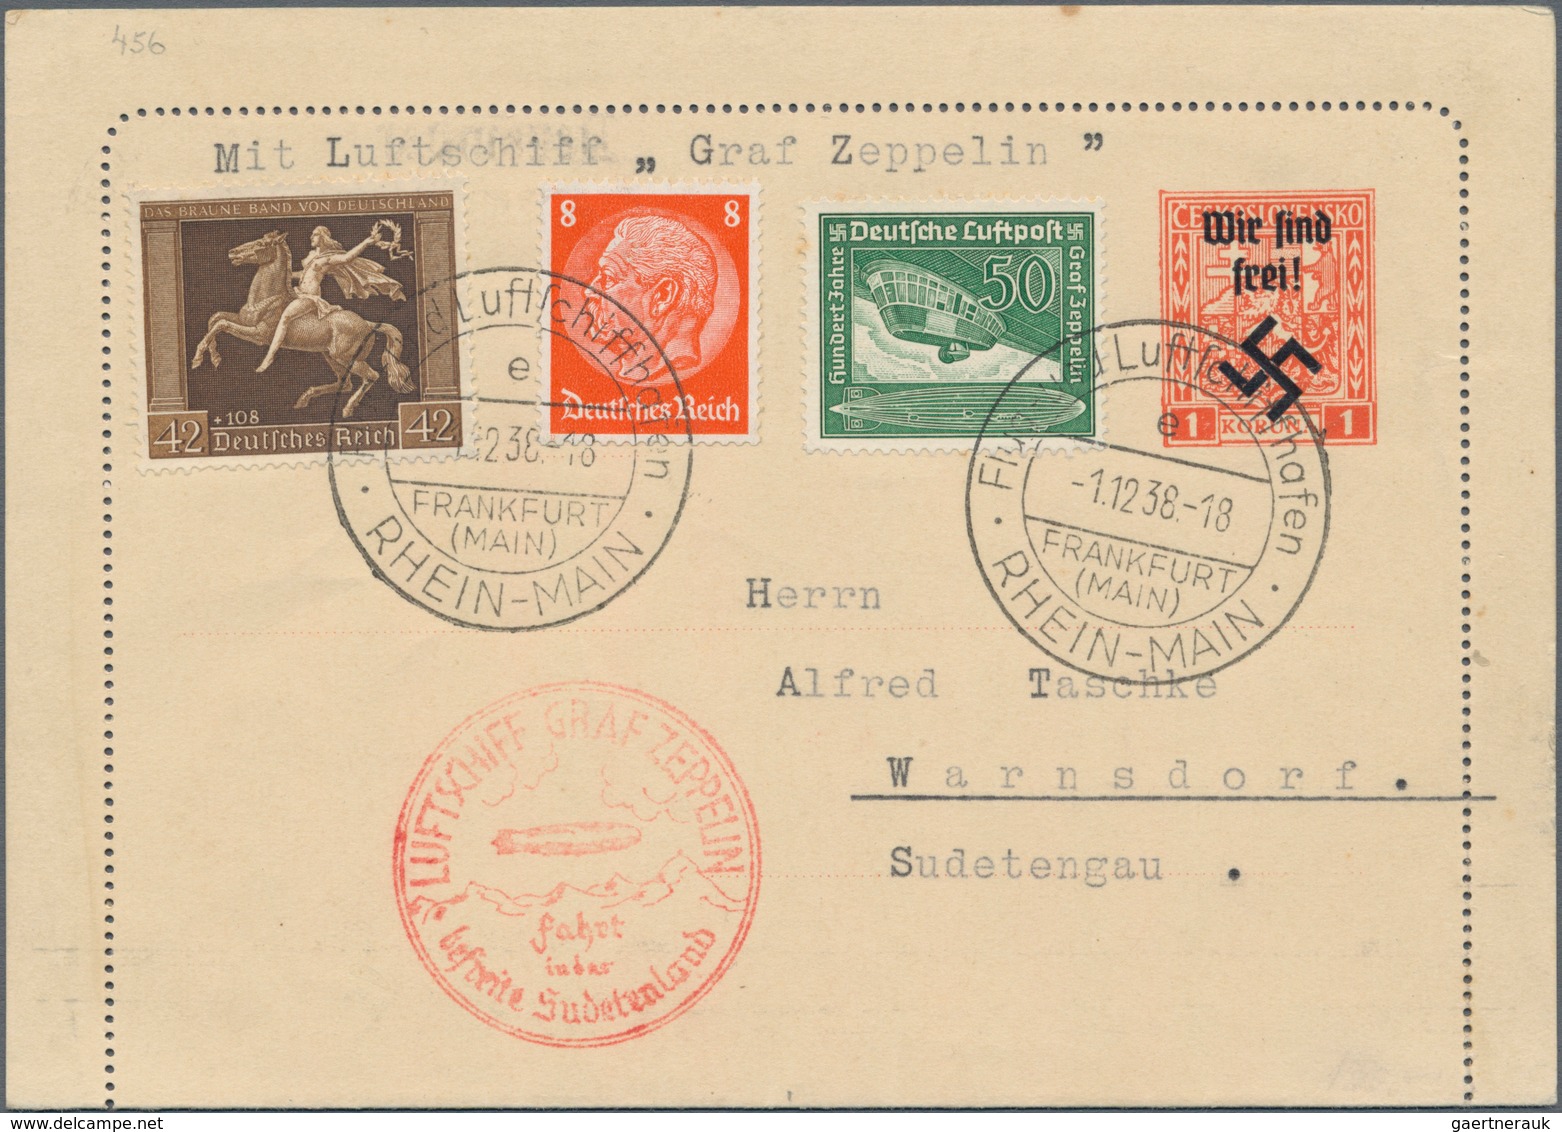 Sudetenland - Rumburg: 1938, ZEPPELIN-Sudetenlandfahrt Auf Kartenbrief Mit Aufdruck "Wir Sind Frei" - Sudetenland